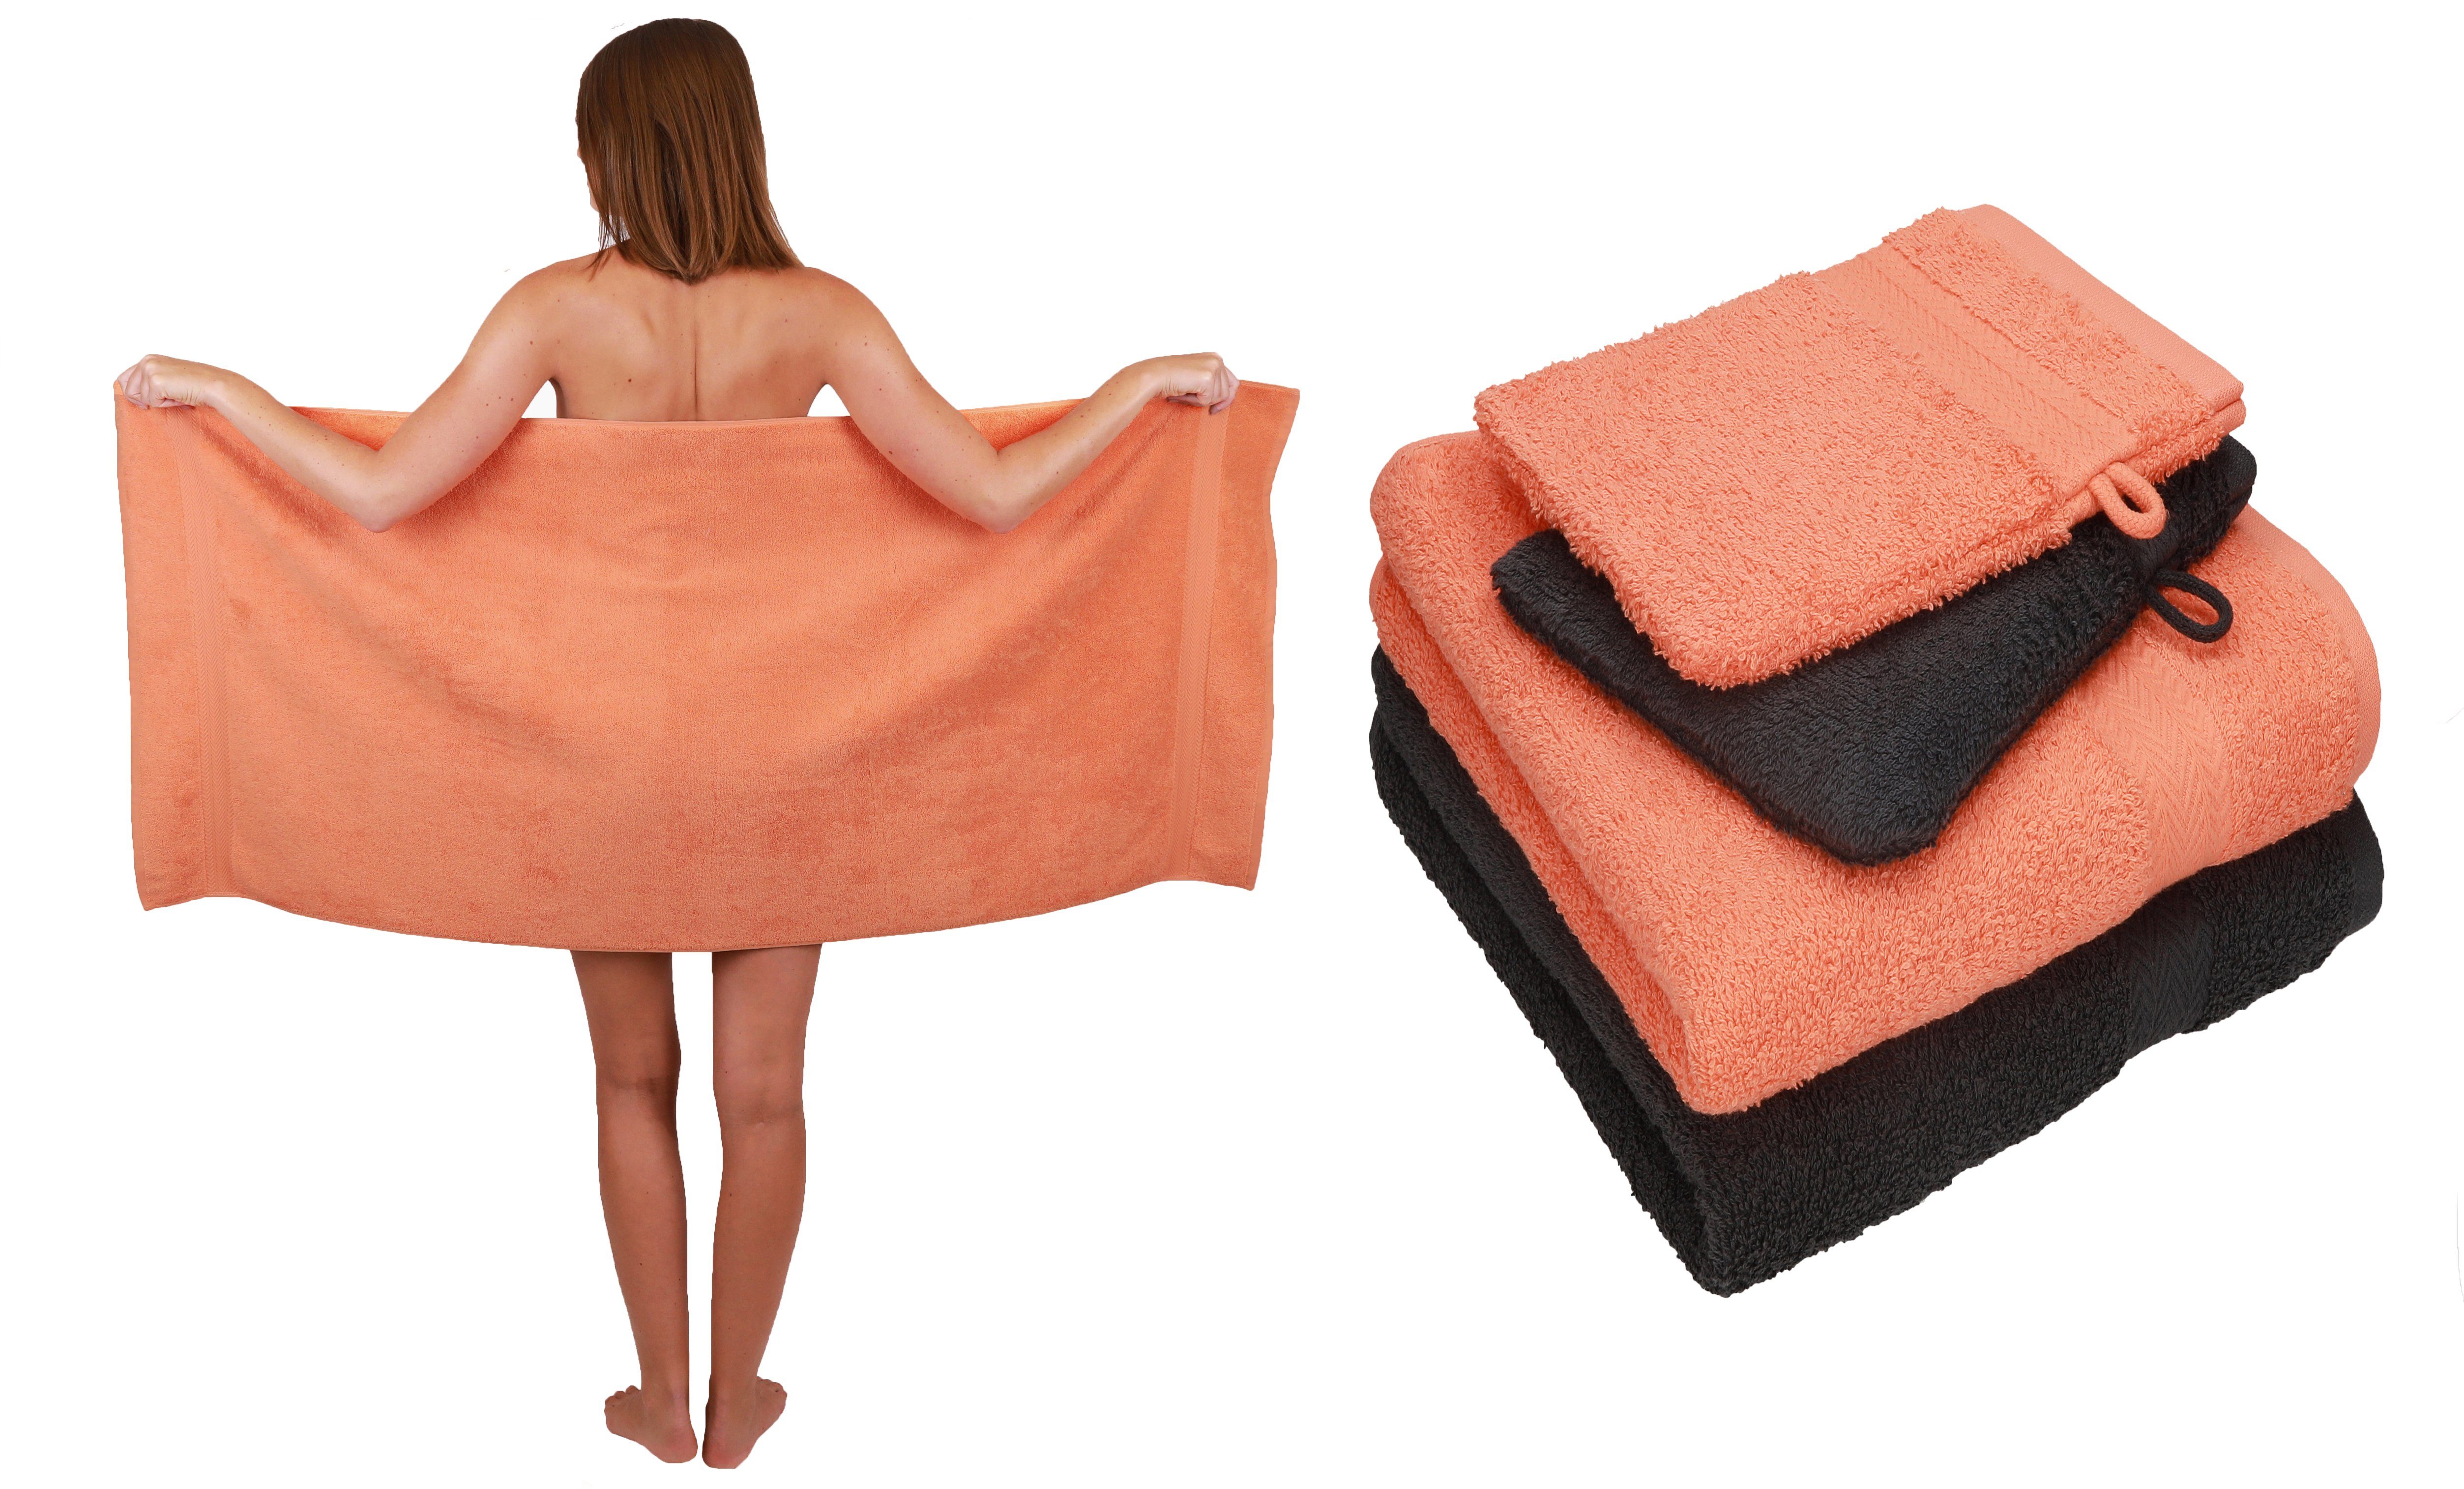 Betz Handtuch Set 5 TLG. Handtuch Set Single Pack 100% Baumwolle 1 Duschtuch 2 Handtücher 2 Waschhandschuhe, 100% Baumwolle orange-graphit grau